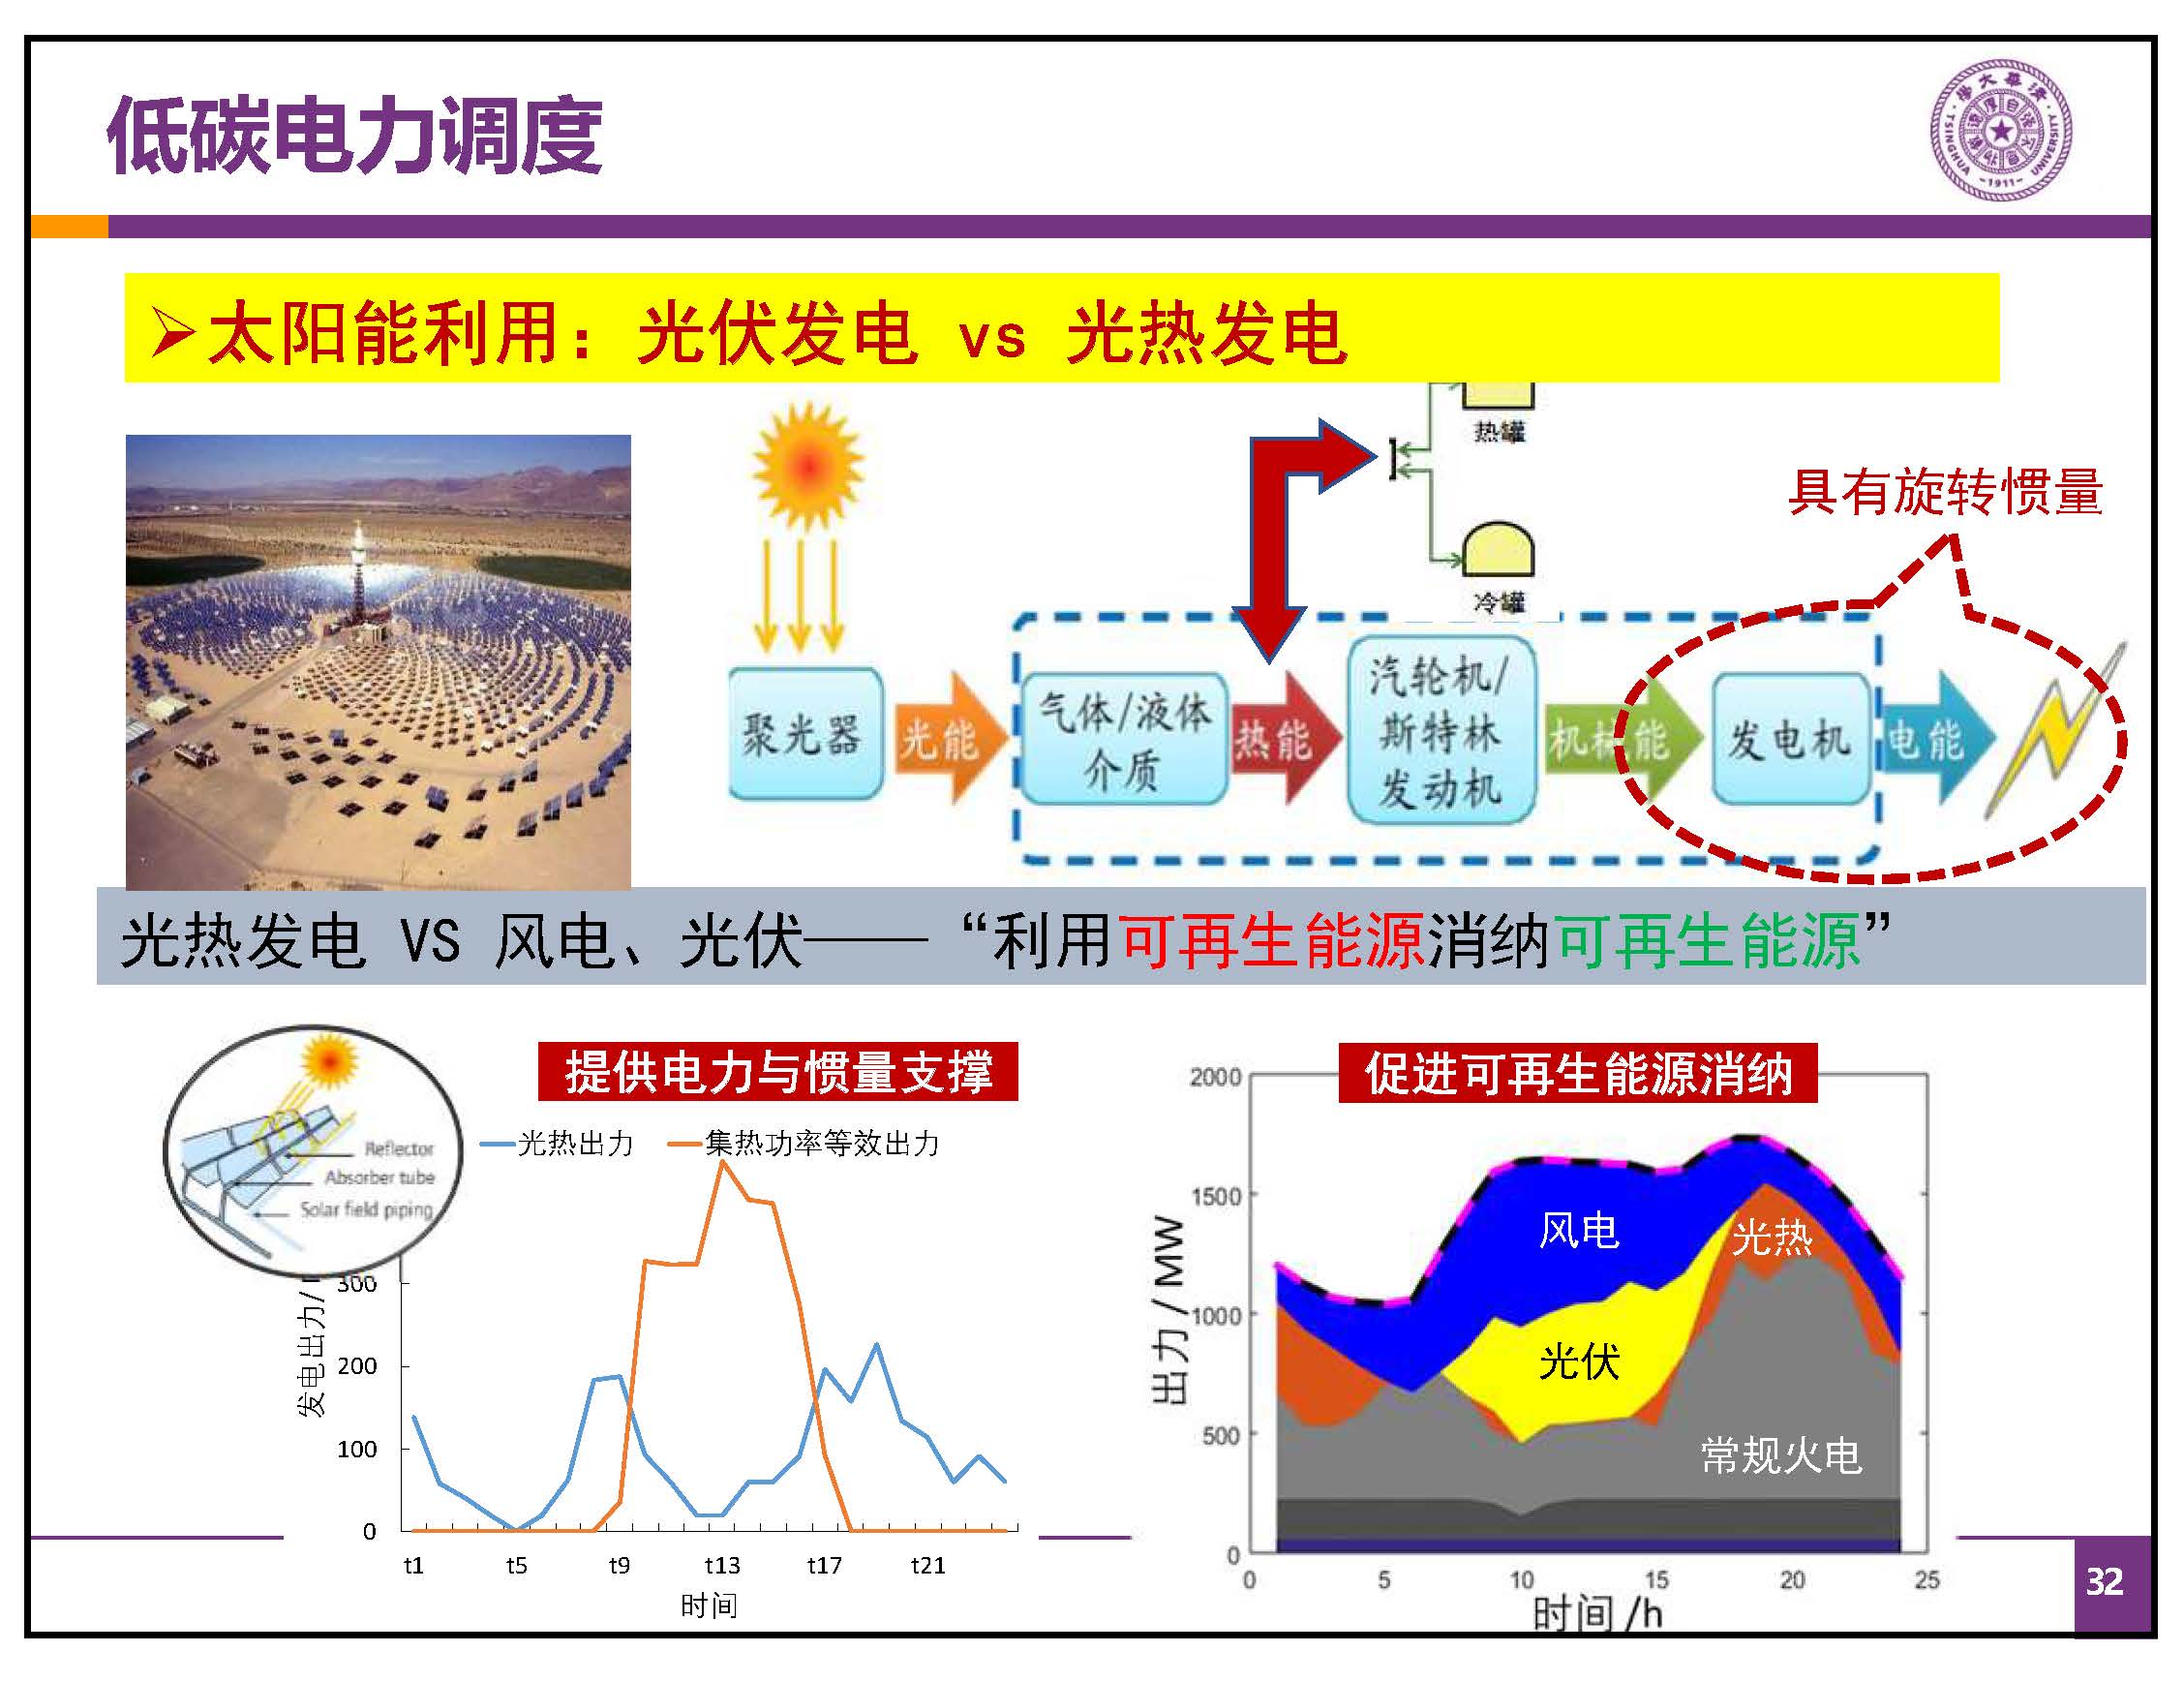 新型电力系统之“碳路”-中国能源研究会-康重庆(拆页2)_页面_32.jpg